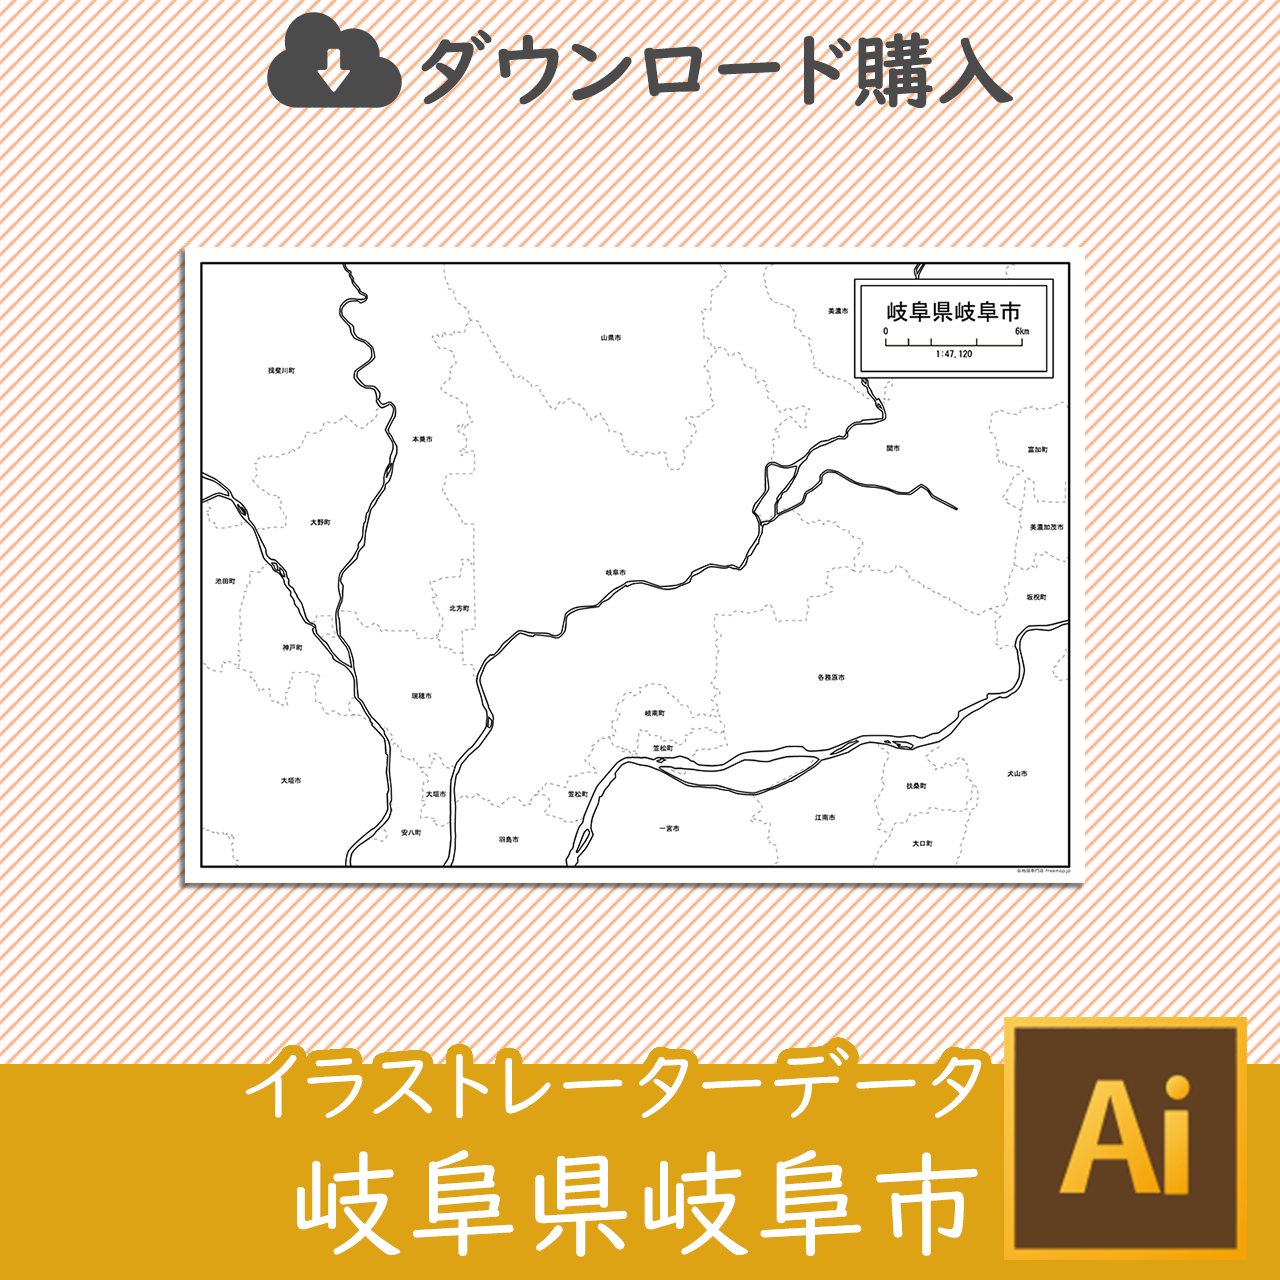 岐阜市のaiデータのサムネイル画像